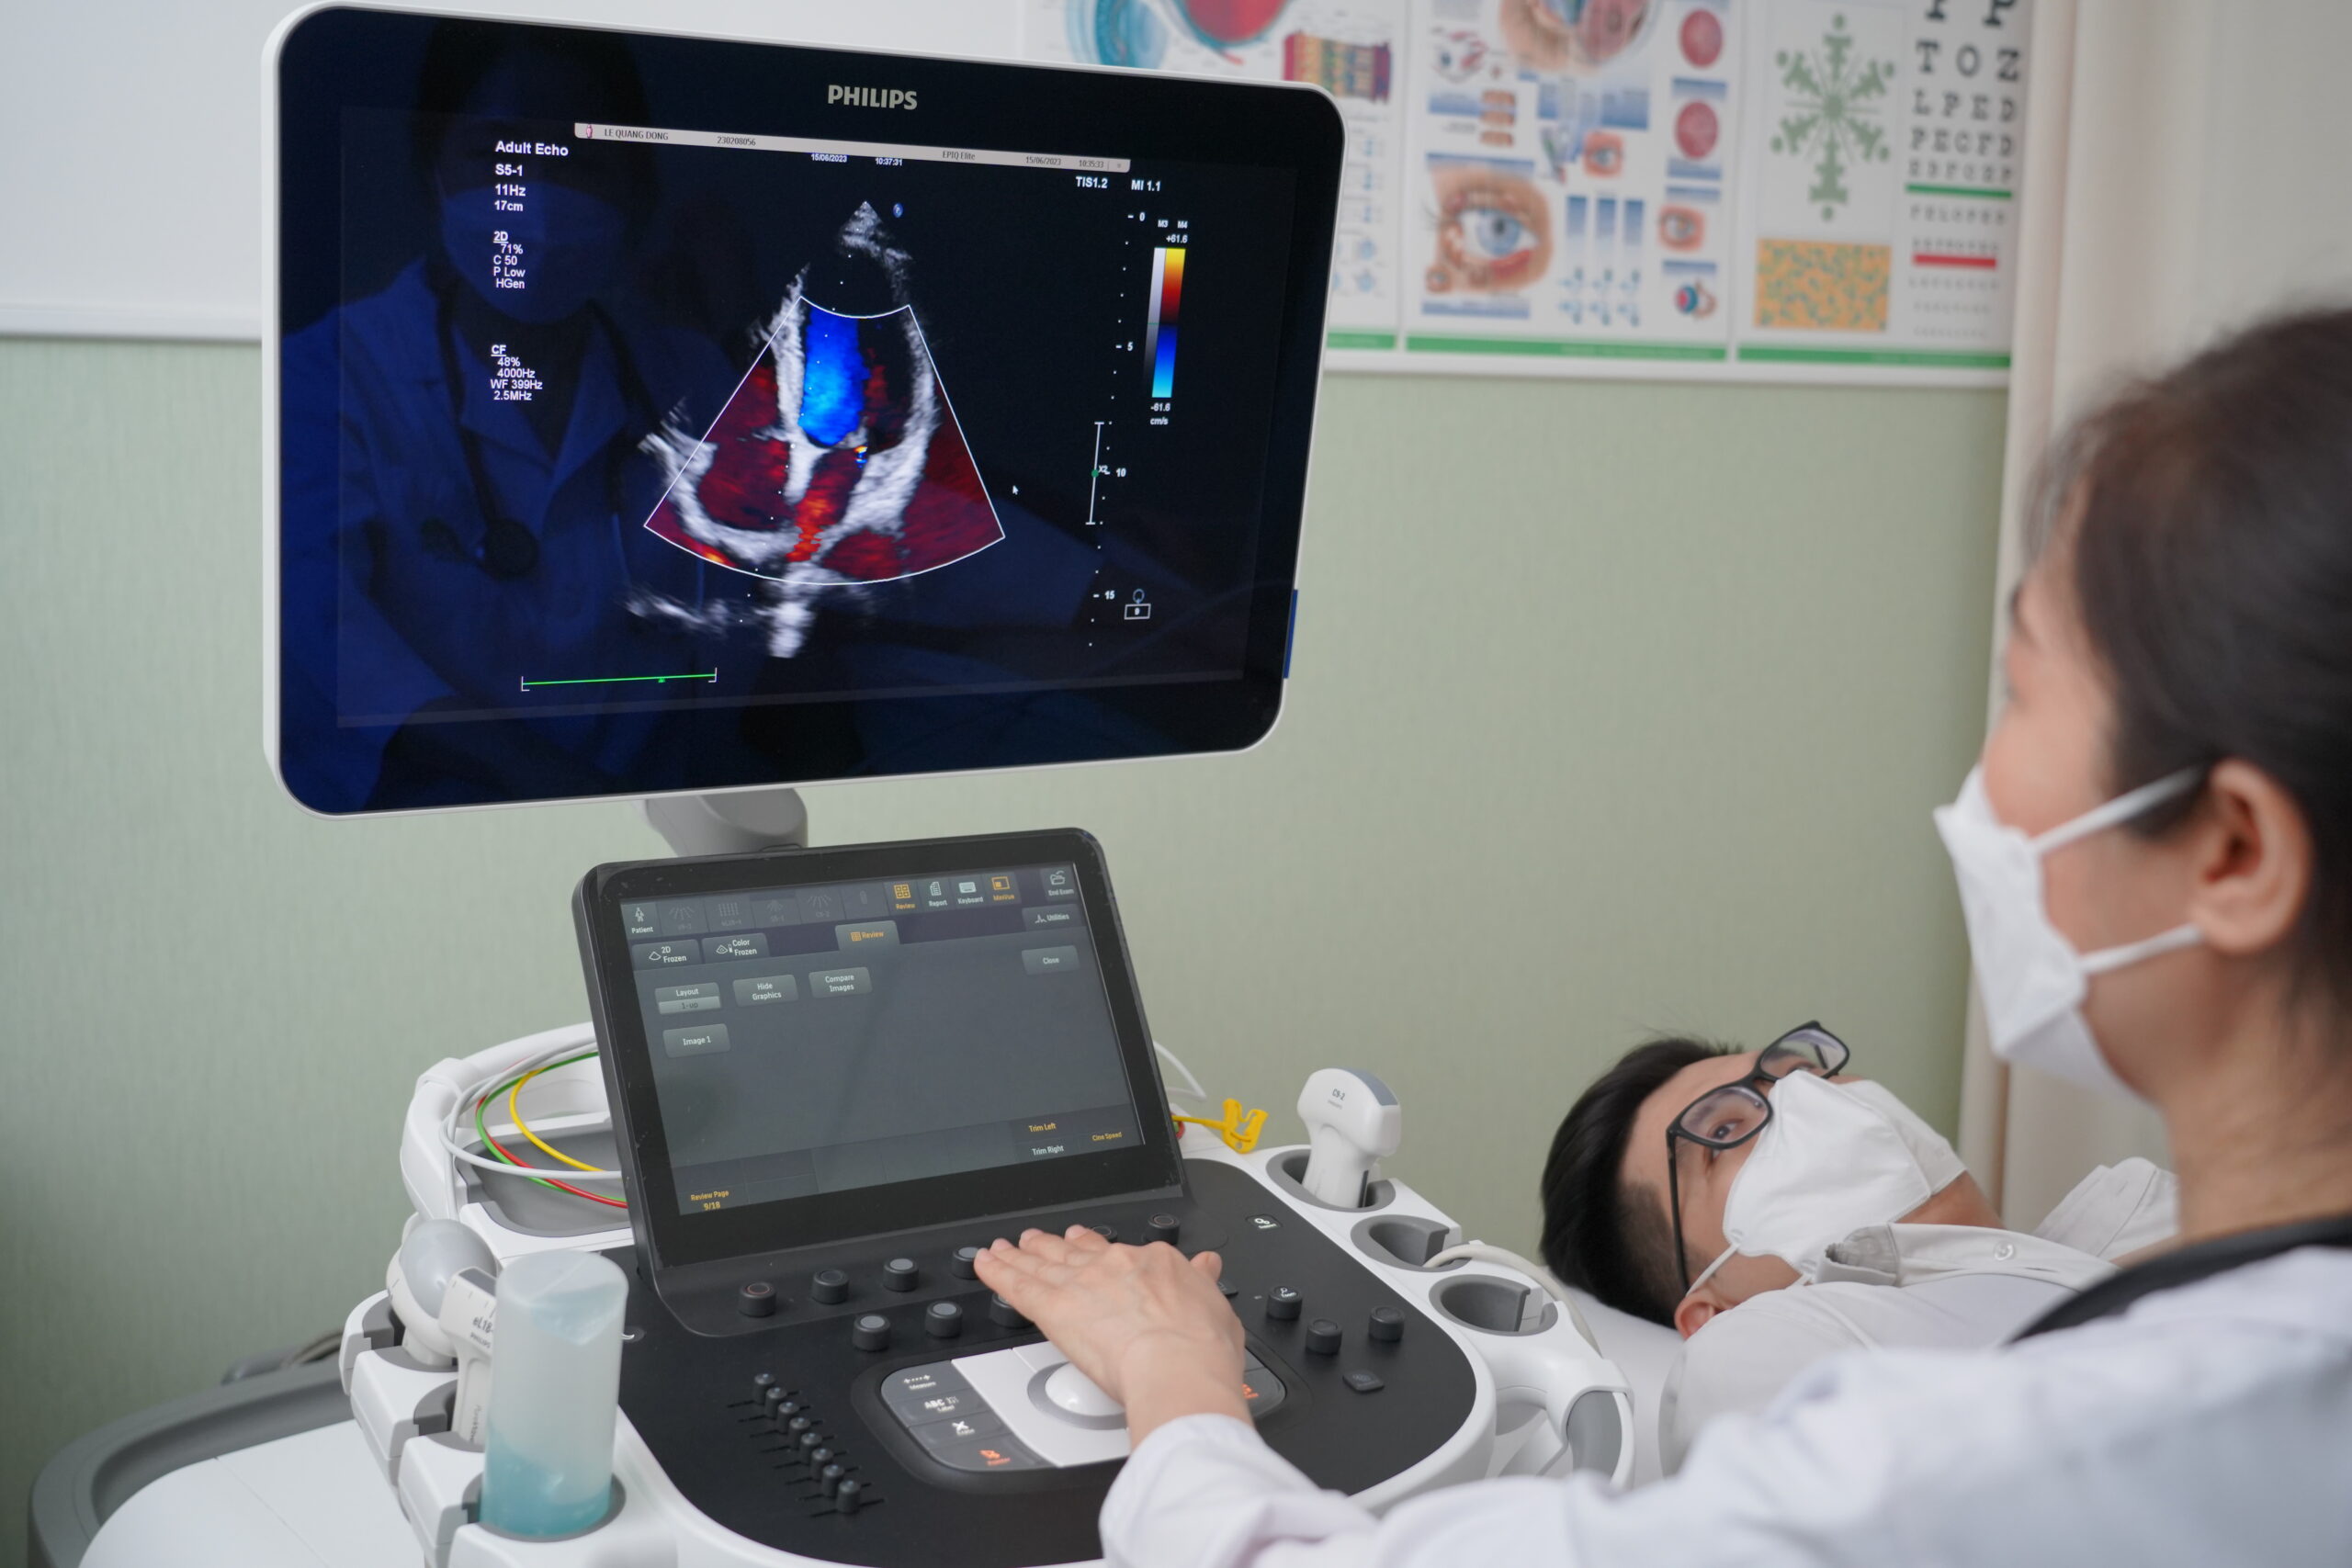 Bệnh viện Đa khoa Hồng Ngọc với trang thiết bị hiện đại, hỗ trợ quá trình chẩn đoán các vấn đề tim mạch chính xác